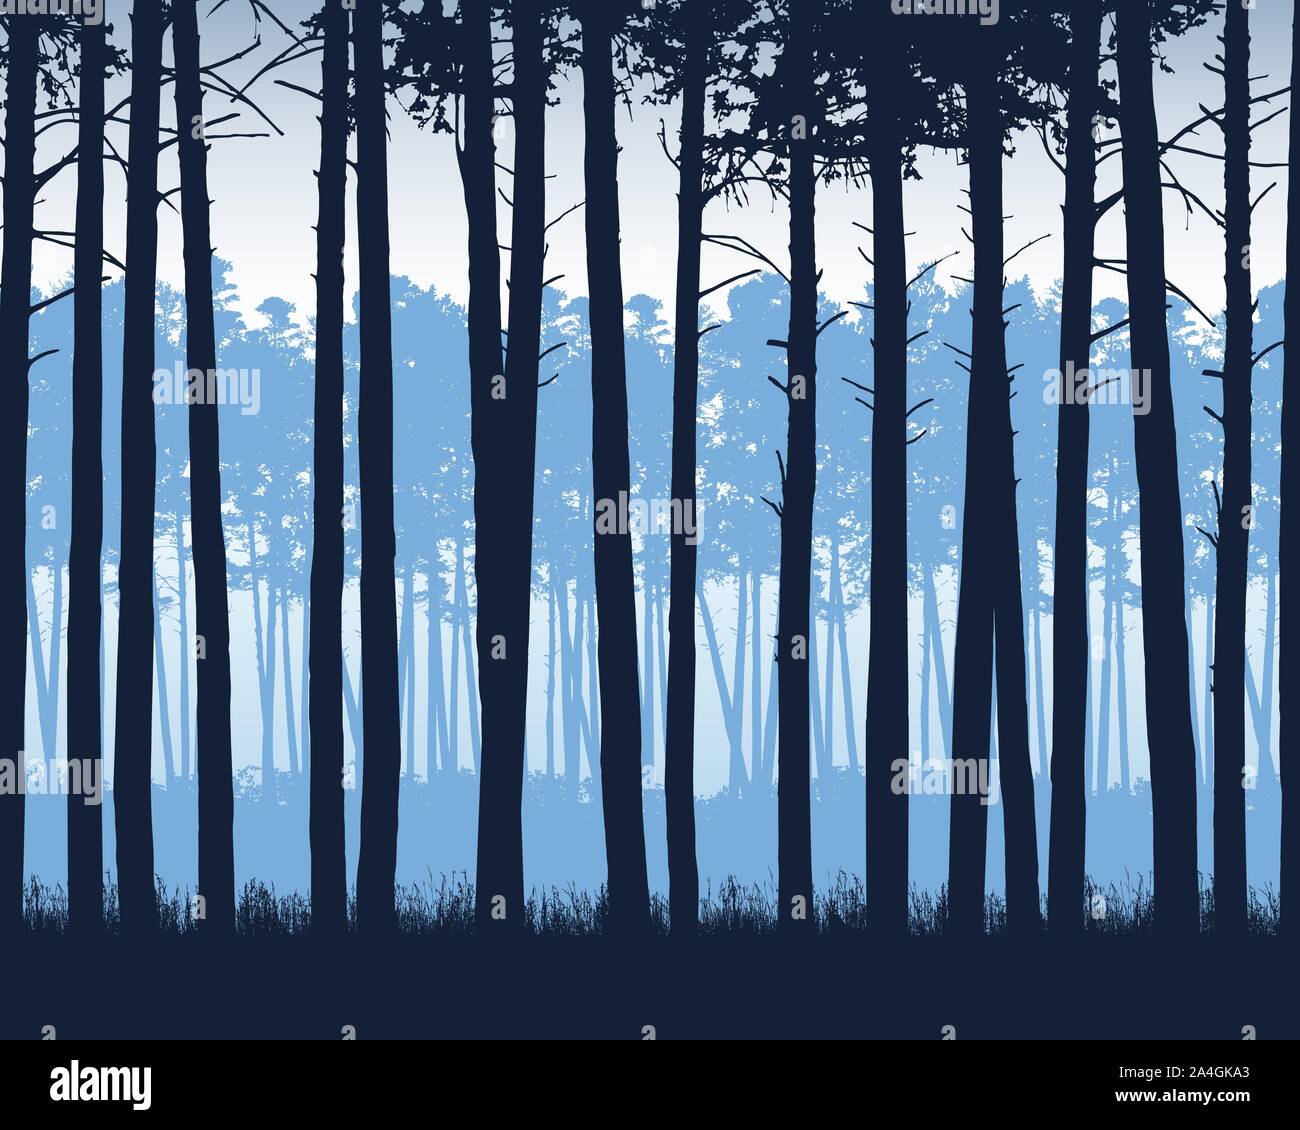 Realistische Darstellung der Landschaft mit Nadelwald mit Pinien unter blauem Himmel - Vektor Stock Vektor